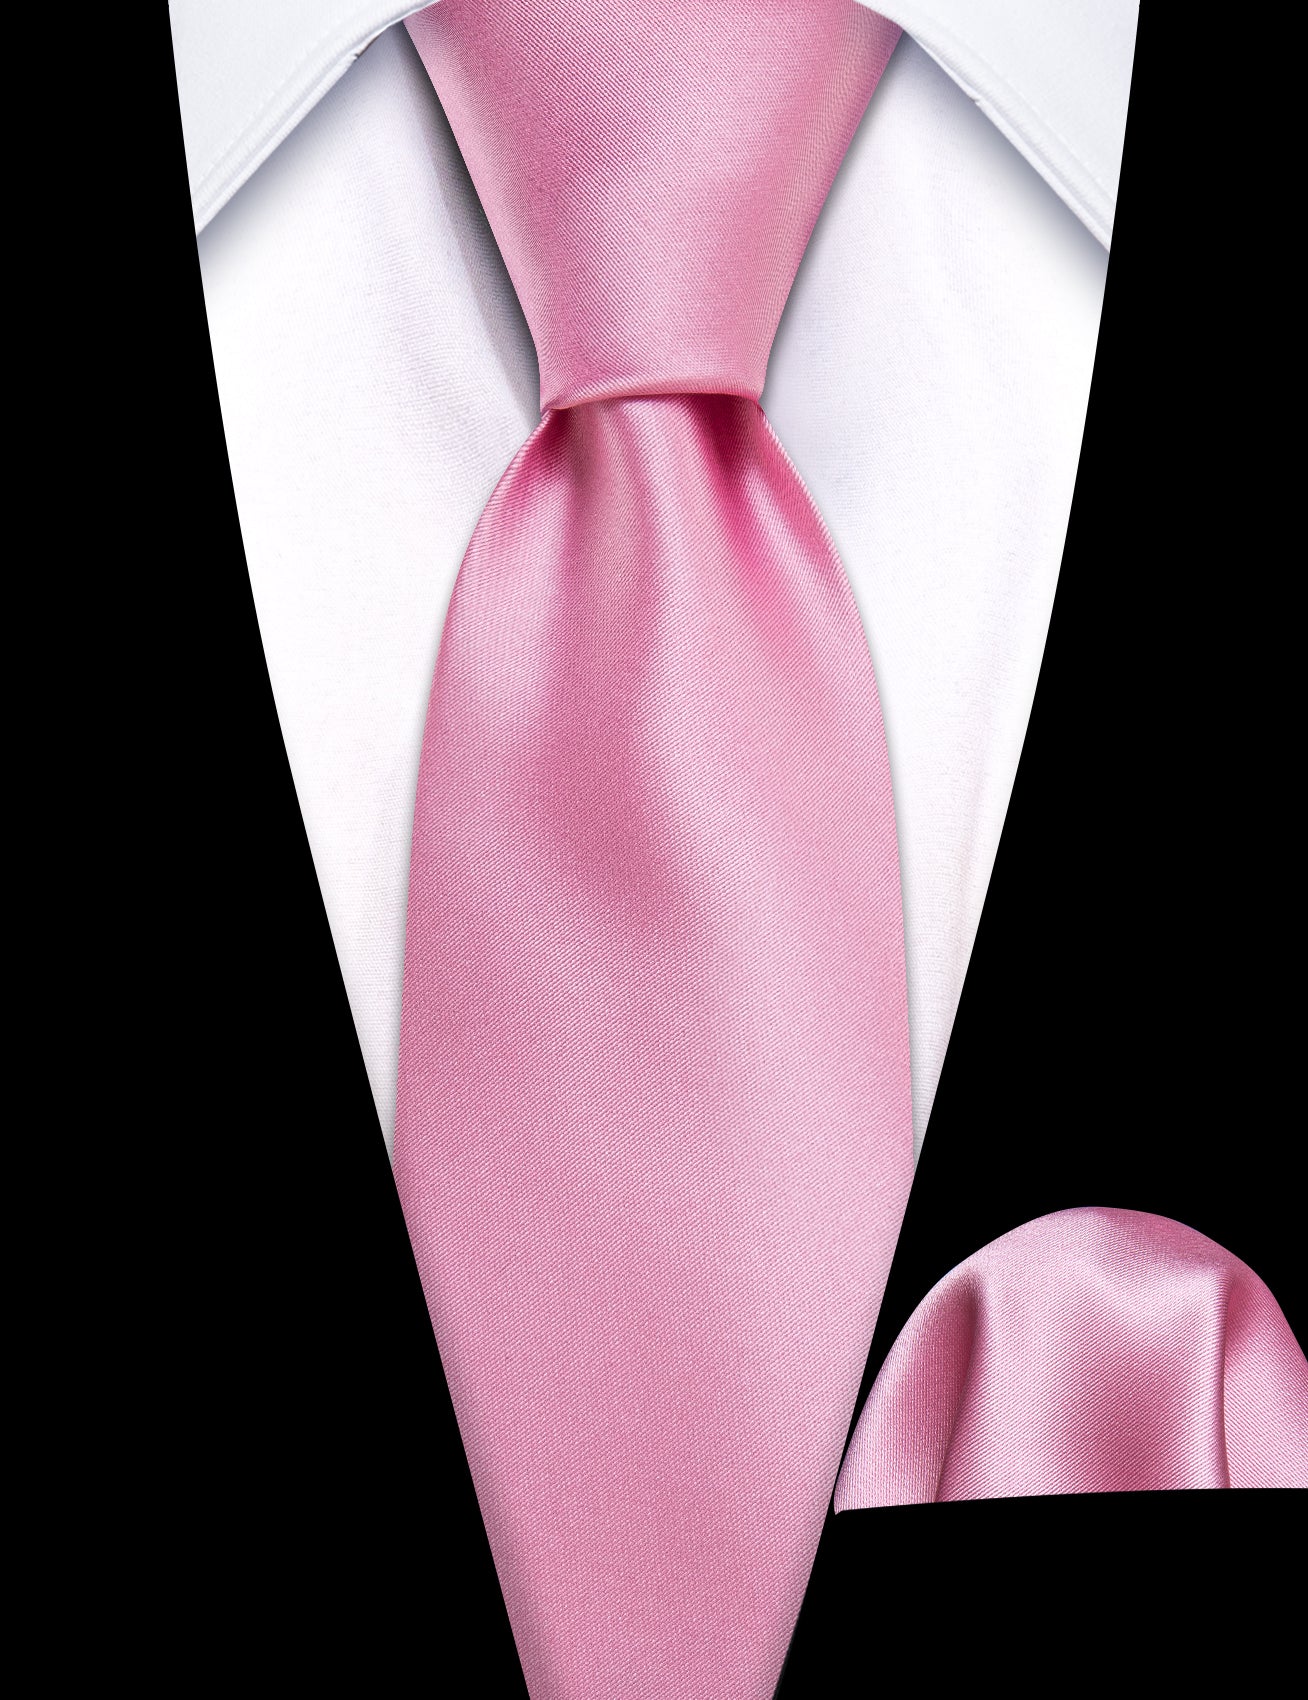 Pink Solid Tie Pocket Square Set For Kids